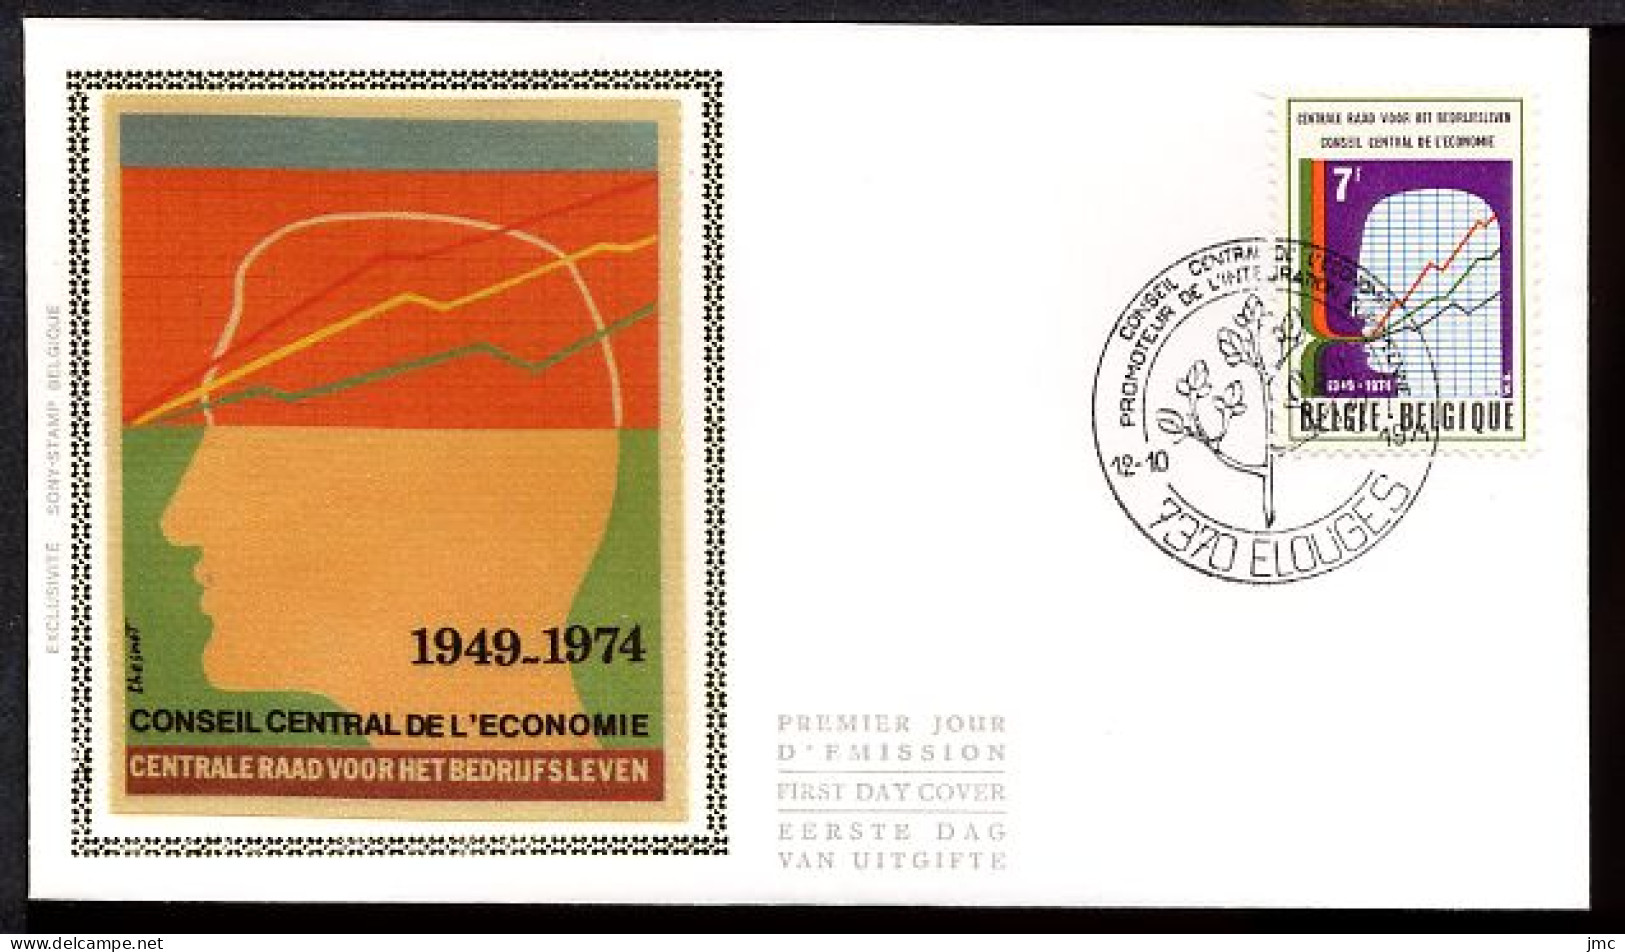 FDC SOIE / ZIJDE 1731 - 12/10/1974 - Conseil Central De L'Economie (1 Pli, Oblitération 7370 Elouges) - 1971-1980